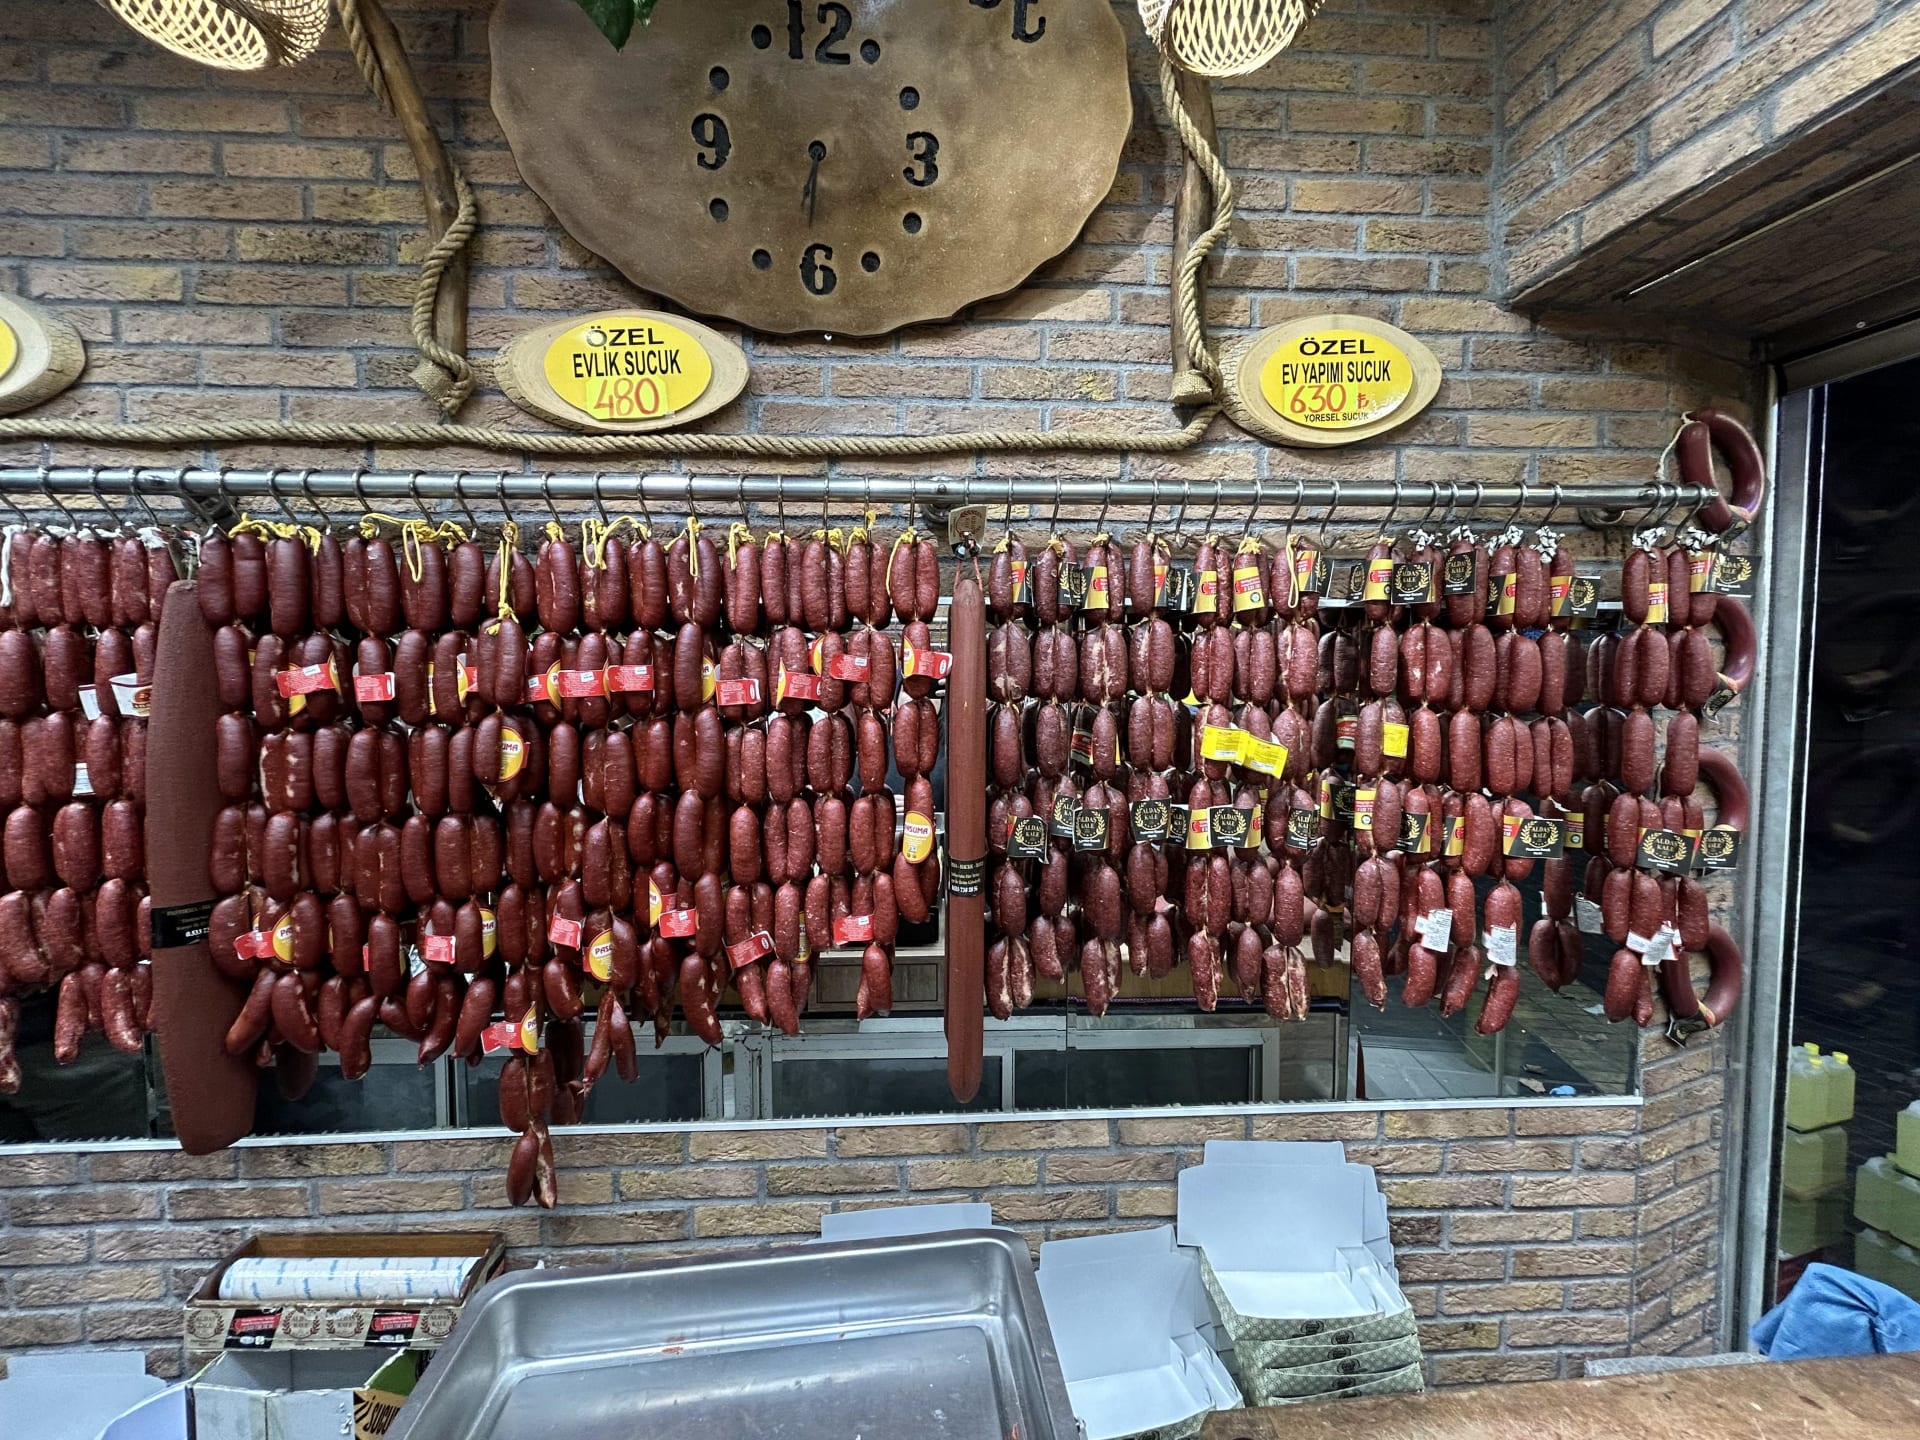 V Kayseri jsou rovněž produkovány velmi chutné lokální uzeniny, zejména sušené hovězí maso Pastirma nebo výborné klobásky Sucuk.